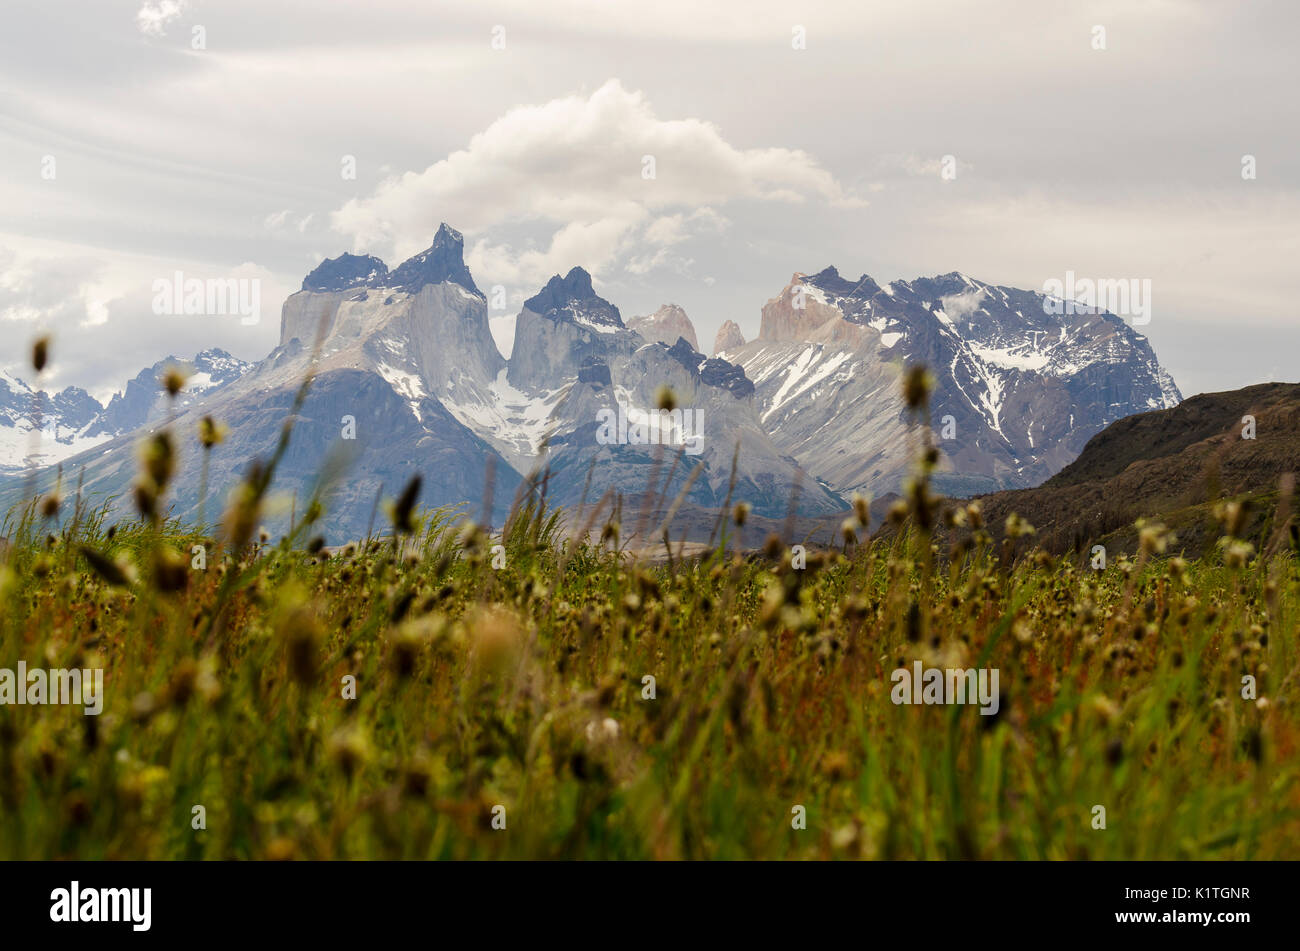 Parque Nacional Torres del Paine, Patagonia, Chile. Primavera en el Parque Nacional Torres del Paine en Chile. Región de Magallanes. Foto de stock